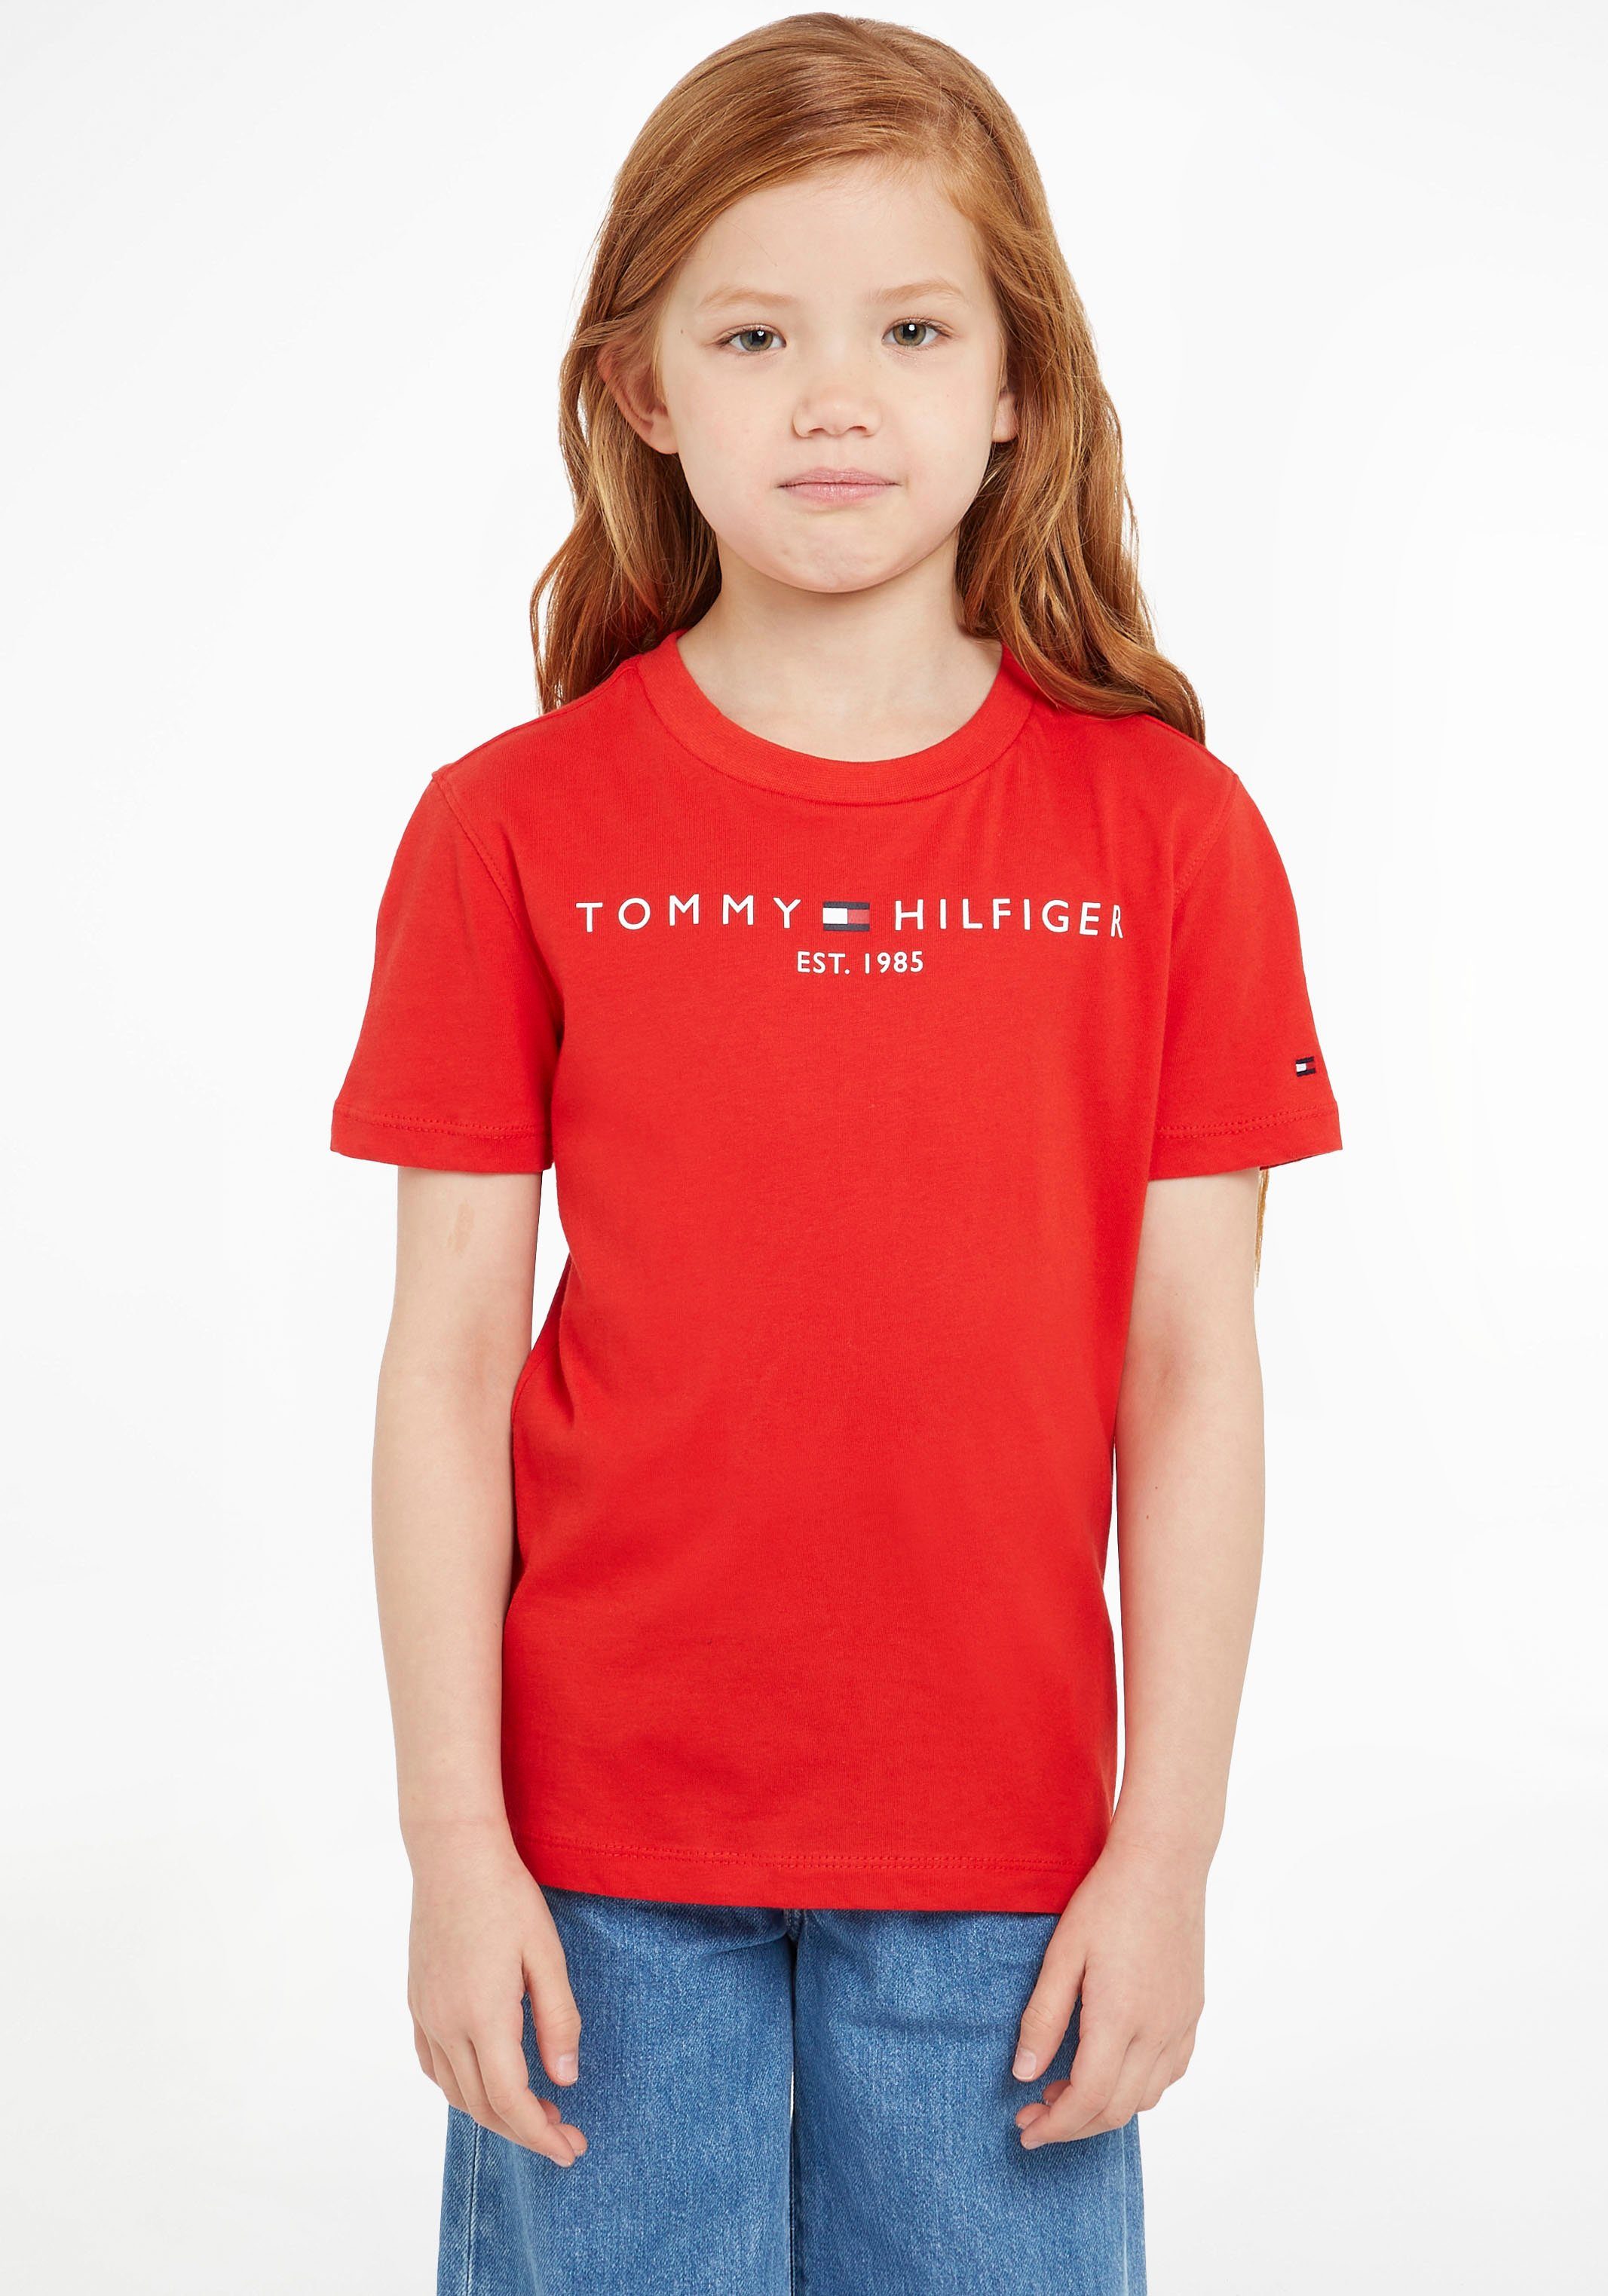 TEE T-Shirt Jungen Hilfiger und MiniMe,für Mädchen ESSENTIAL Kids Kinder Tommy Junior